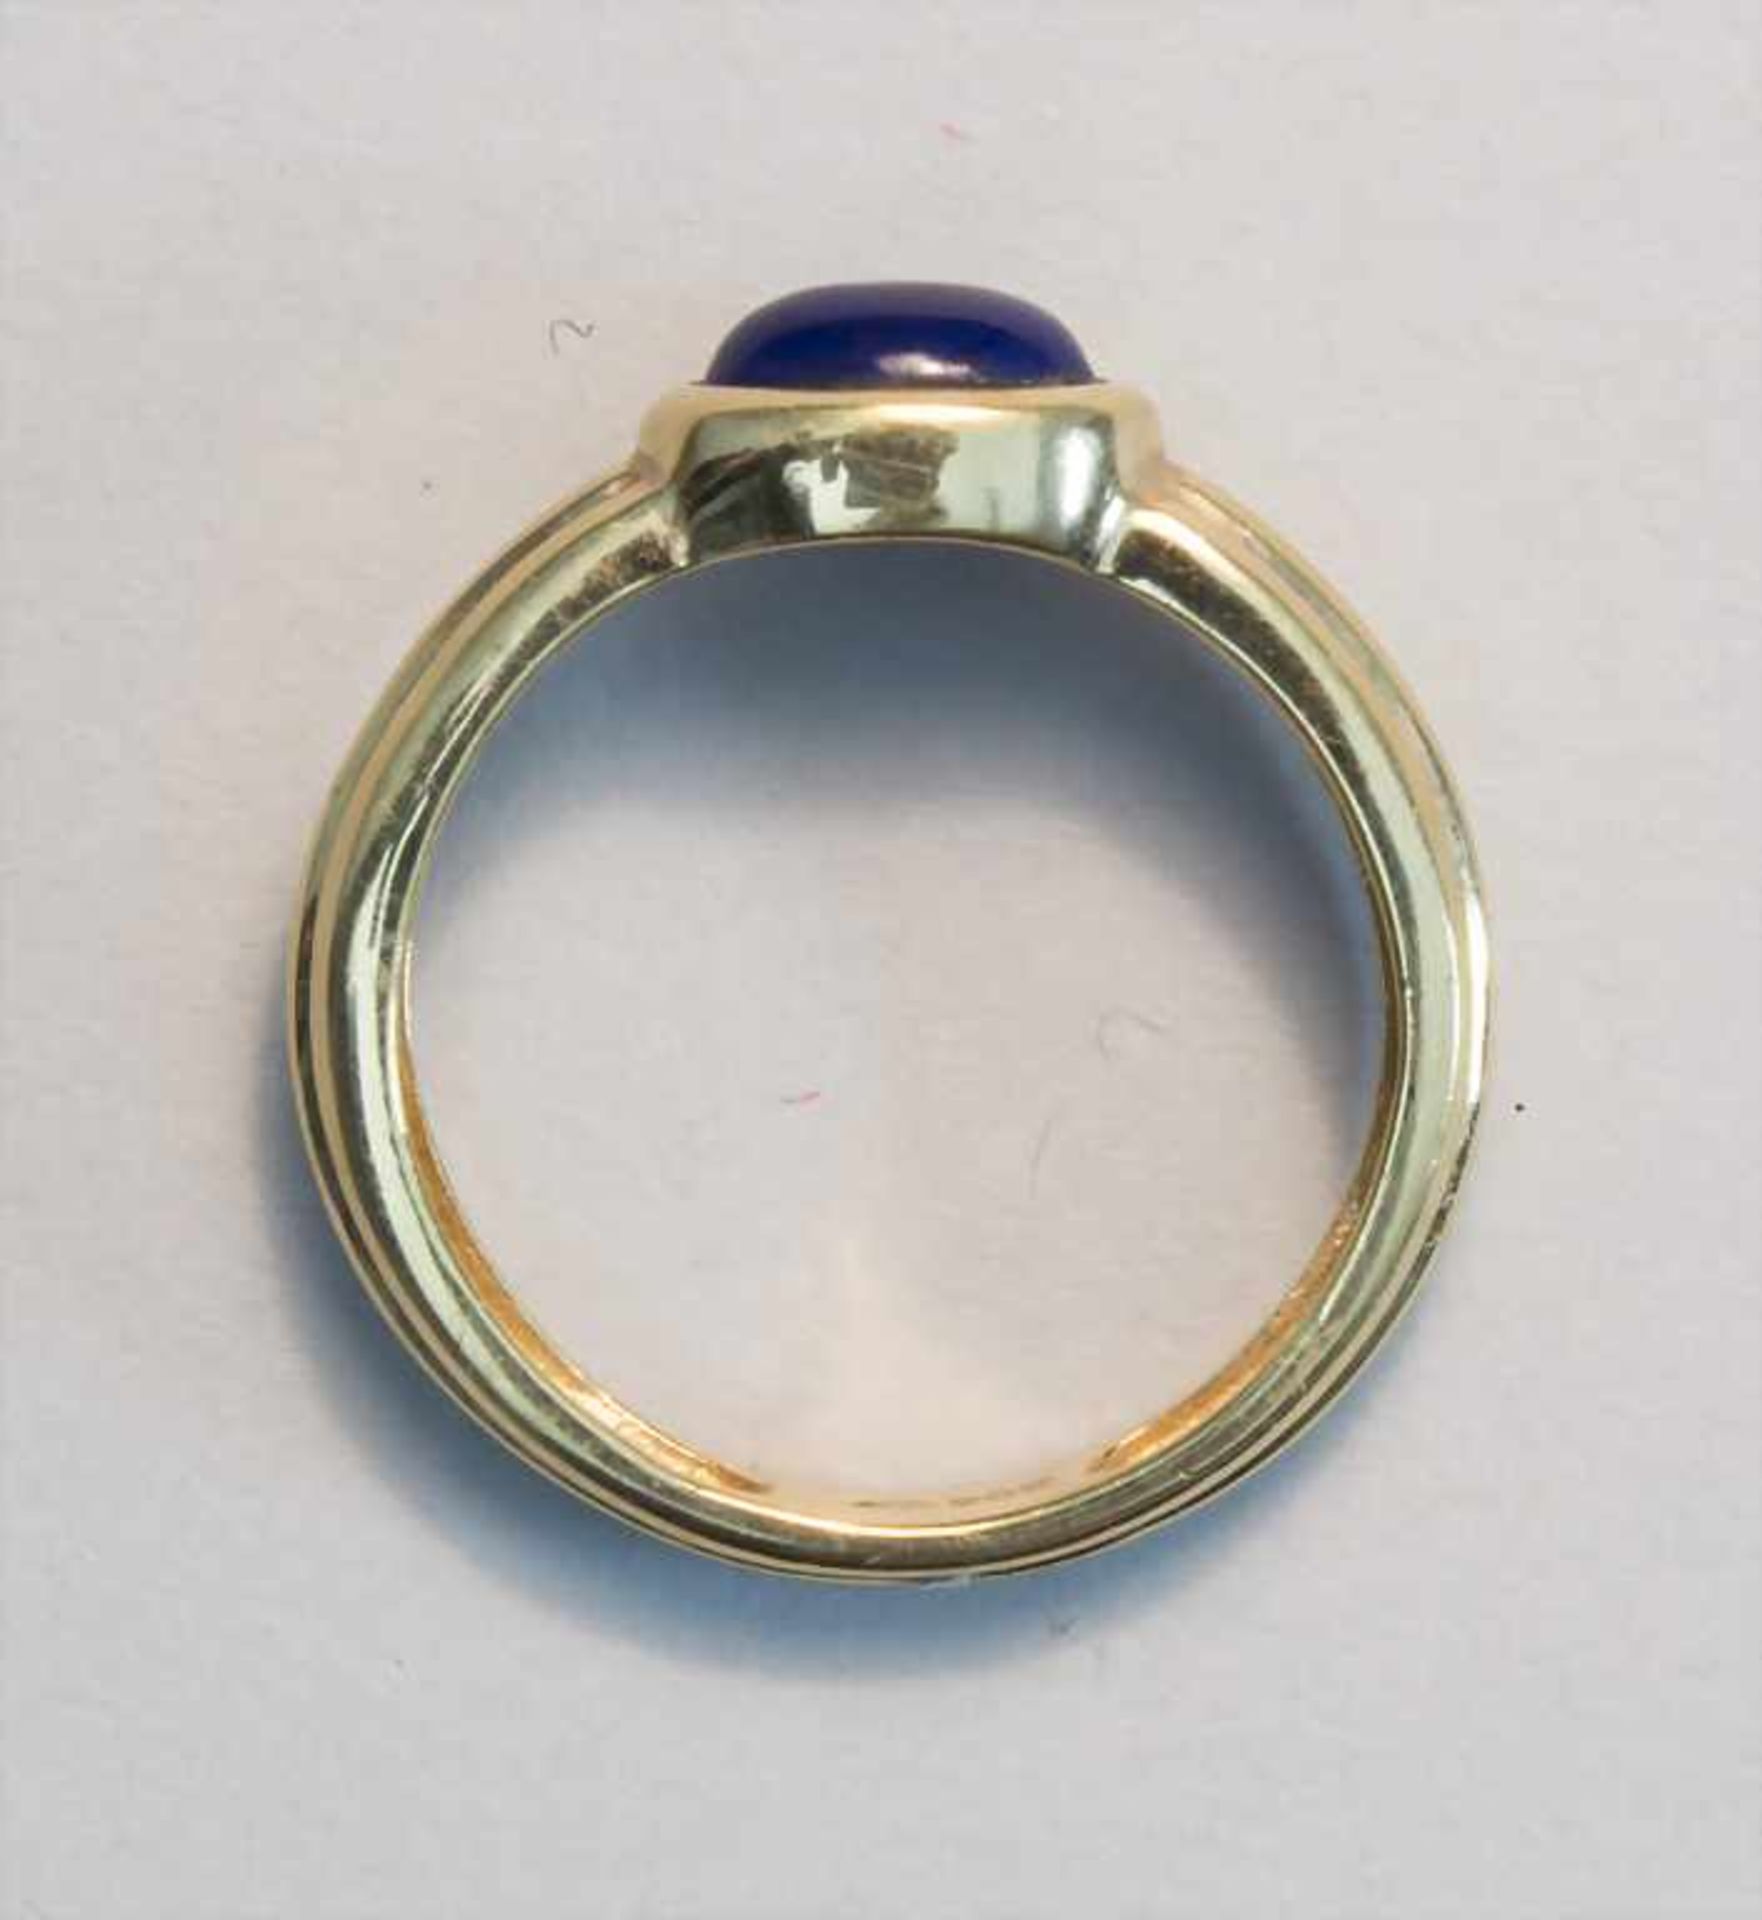 Damenring mit Lapislazuli / A ladies ring with lapis lazuli - Image 4 of 4